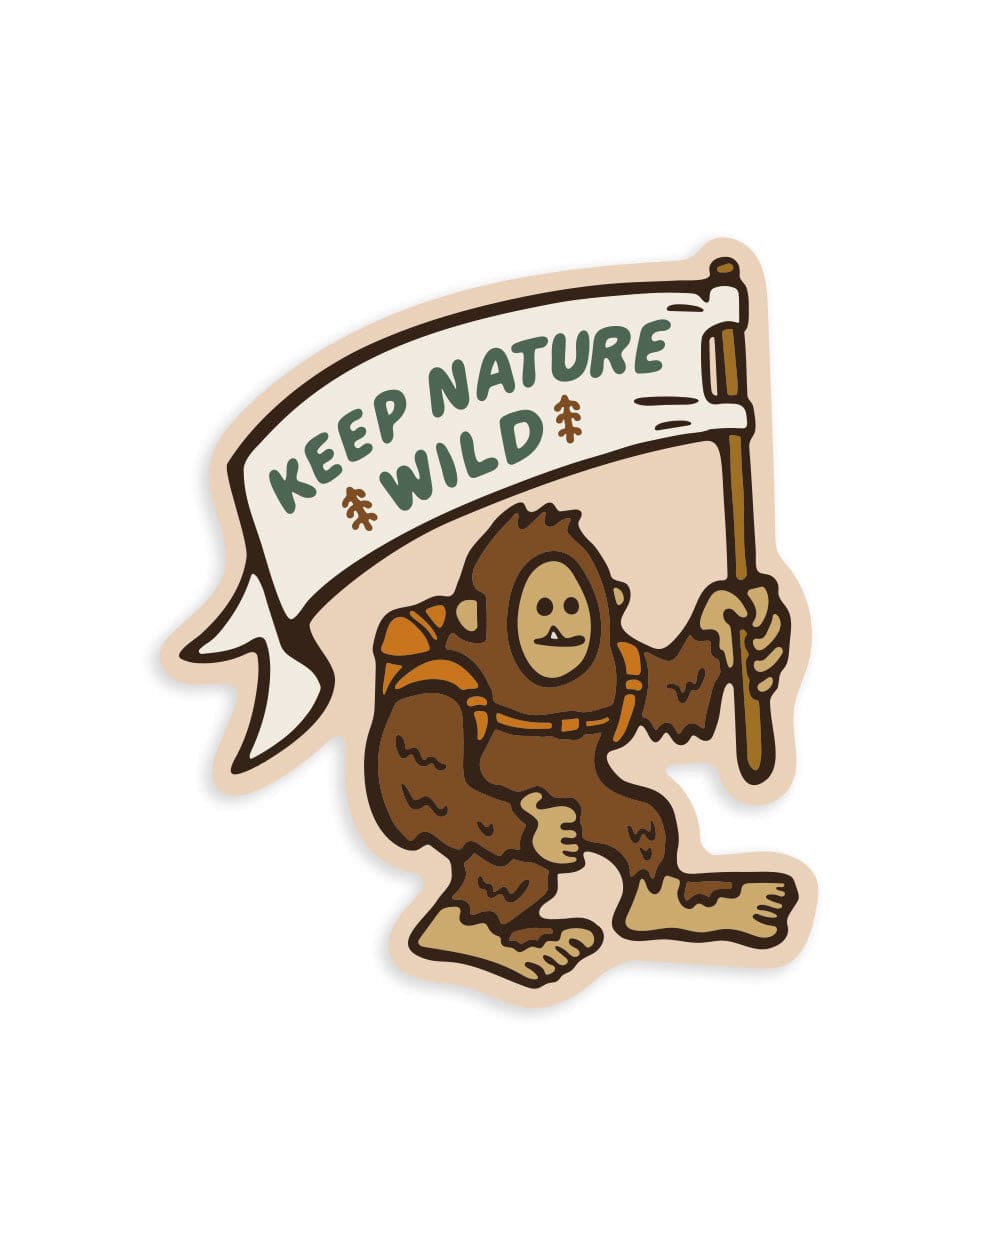 Keep Nature Wild Sticker Venture On Windy Peak | Sticker